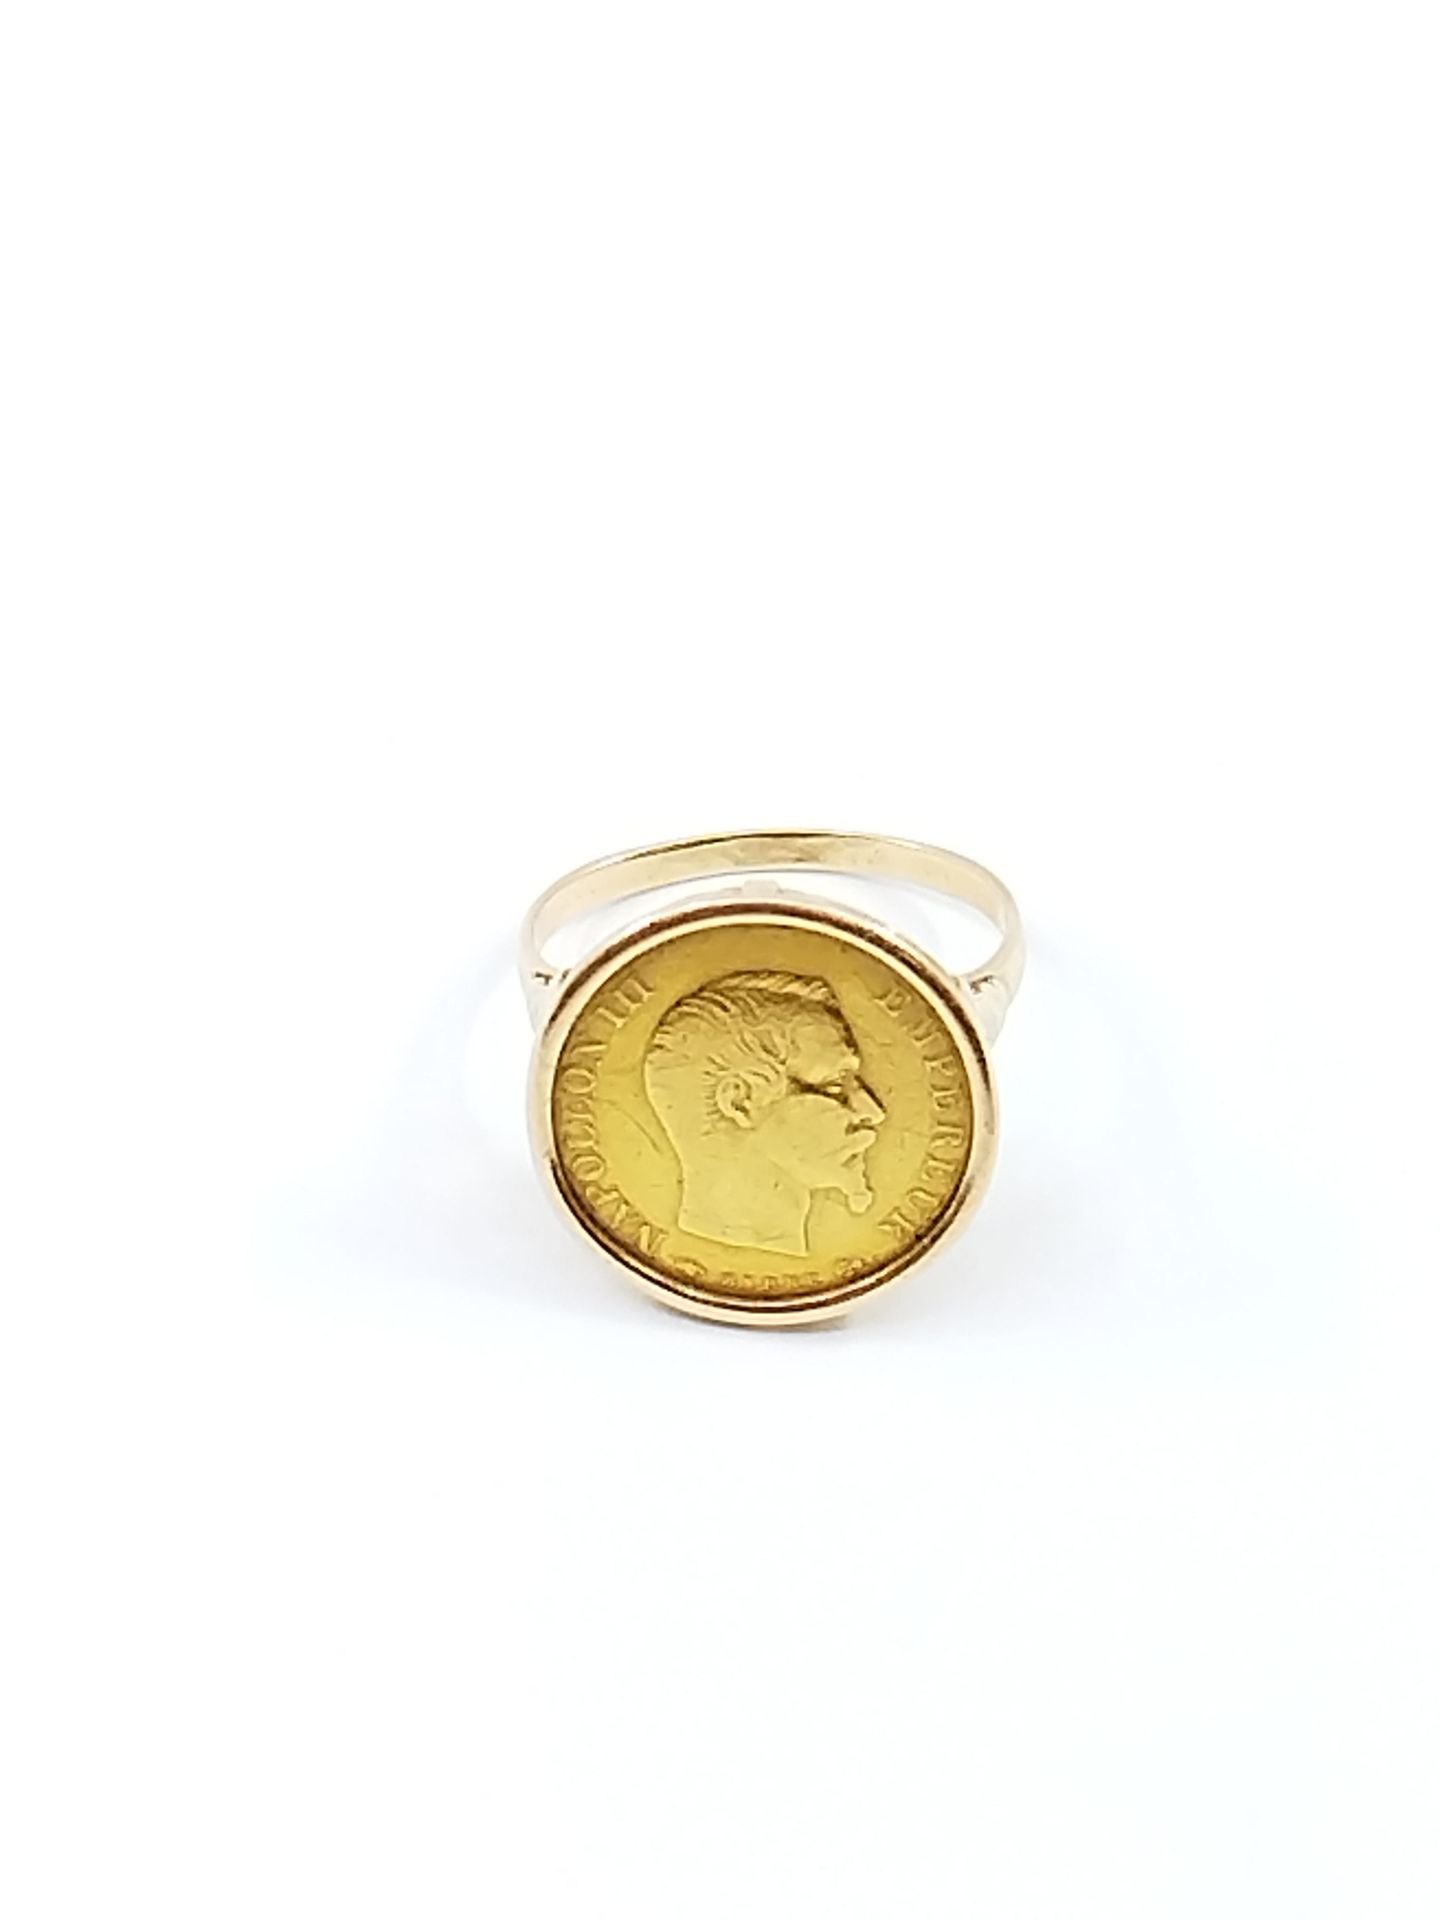 Null Arbeit Französisch

RING aus 750° Gelbgold, verziert mit einer 10-Franc-Mün&hellip;